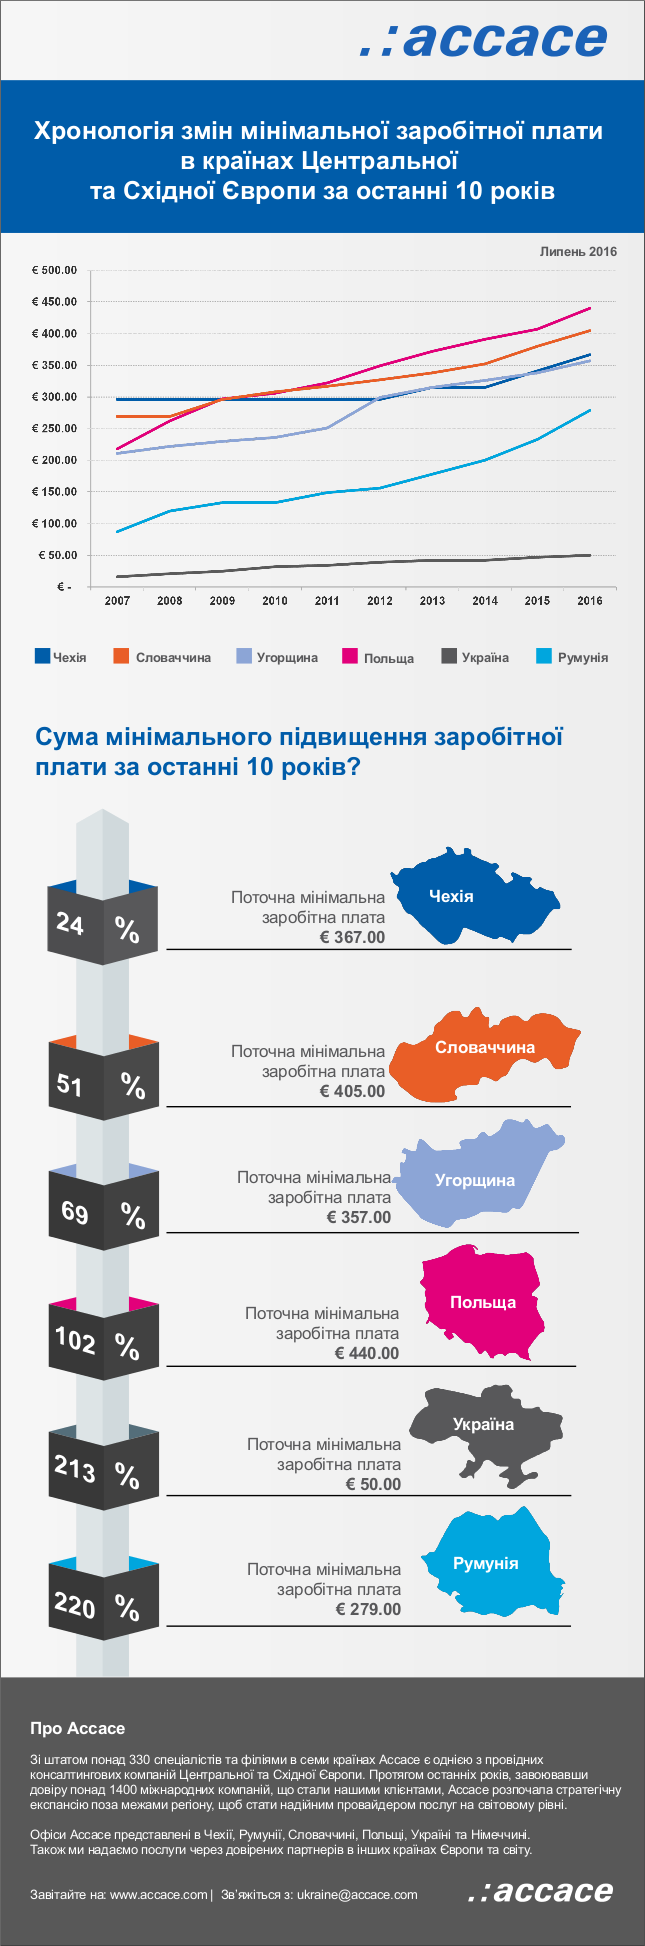 Хронологія змін мінімальної заробітної плати в країнах Центральної та Східної Європи за останні 10 років